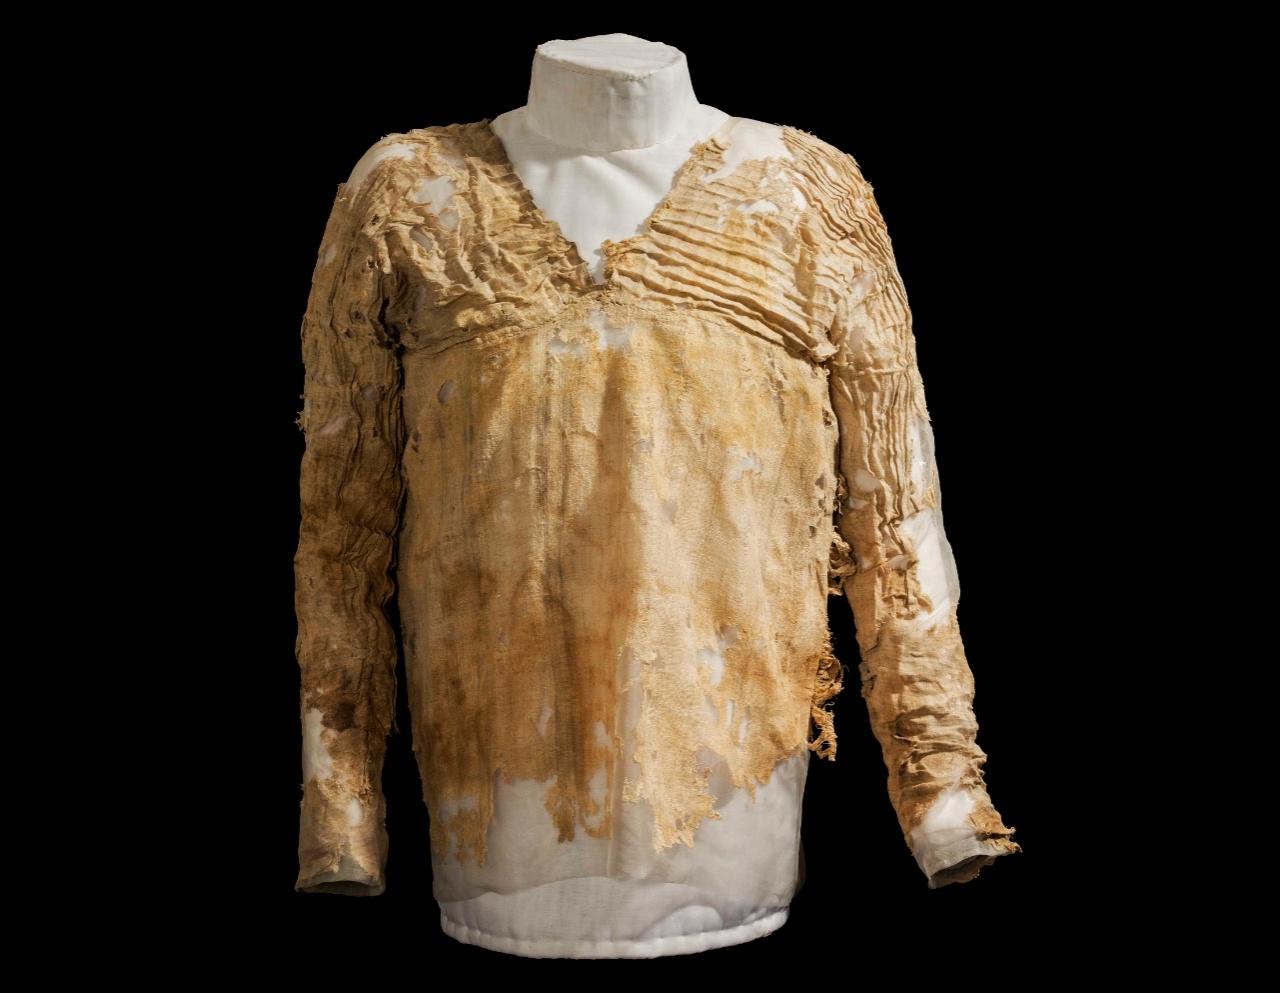 Den otroliga historien bakom världens äldsta klänning från Egypten som är mer än 5,000 1 år gammal XNUMX